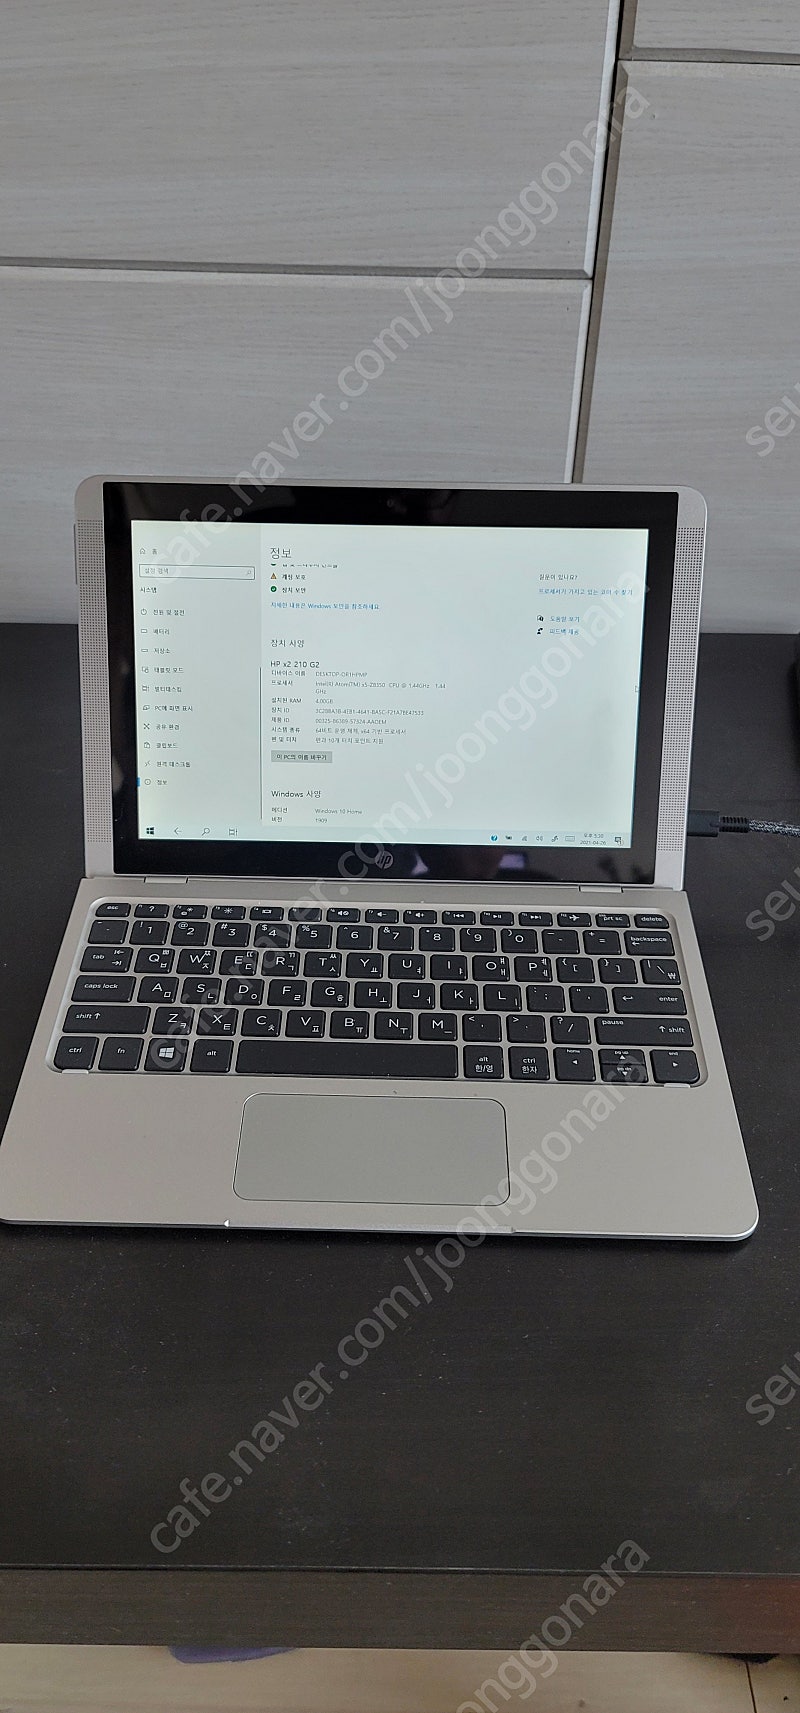 HP x2 210 G2 노트북(cpu x5-z8350, ram 4G, ssd 128G, IPS터치스크린)